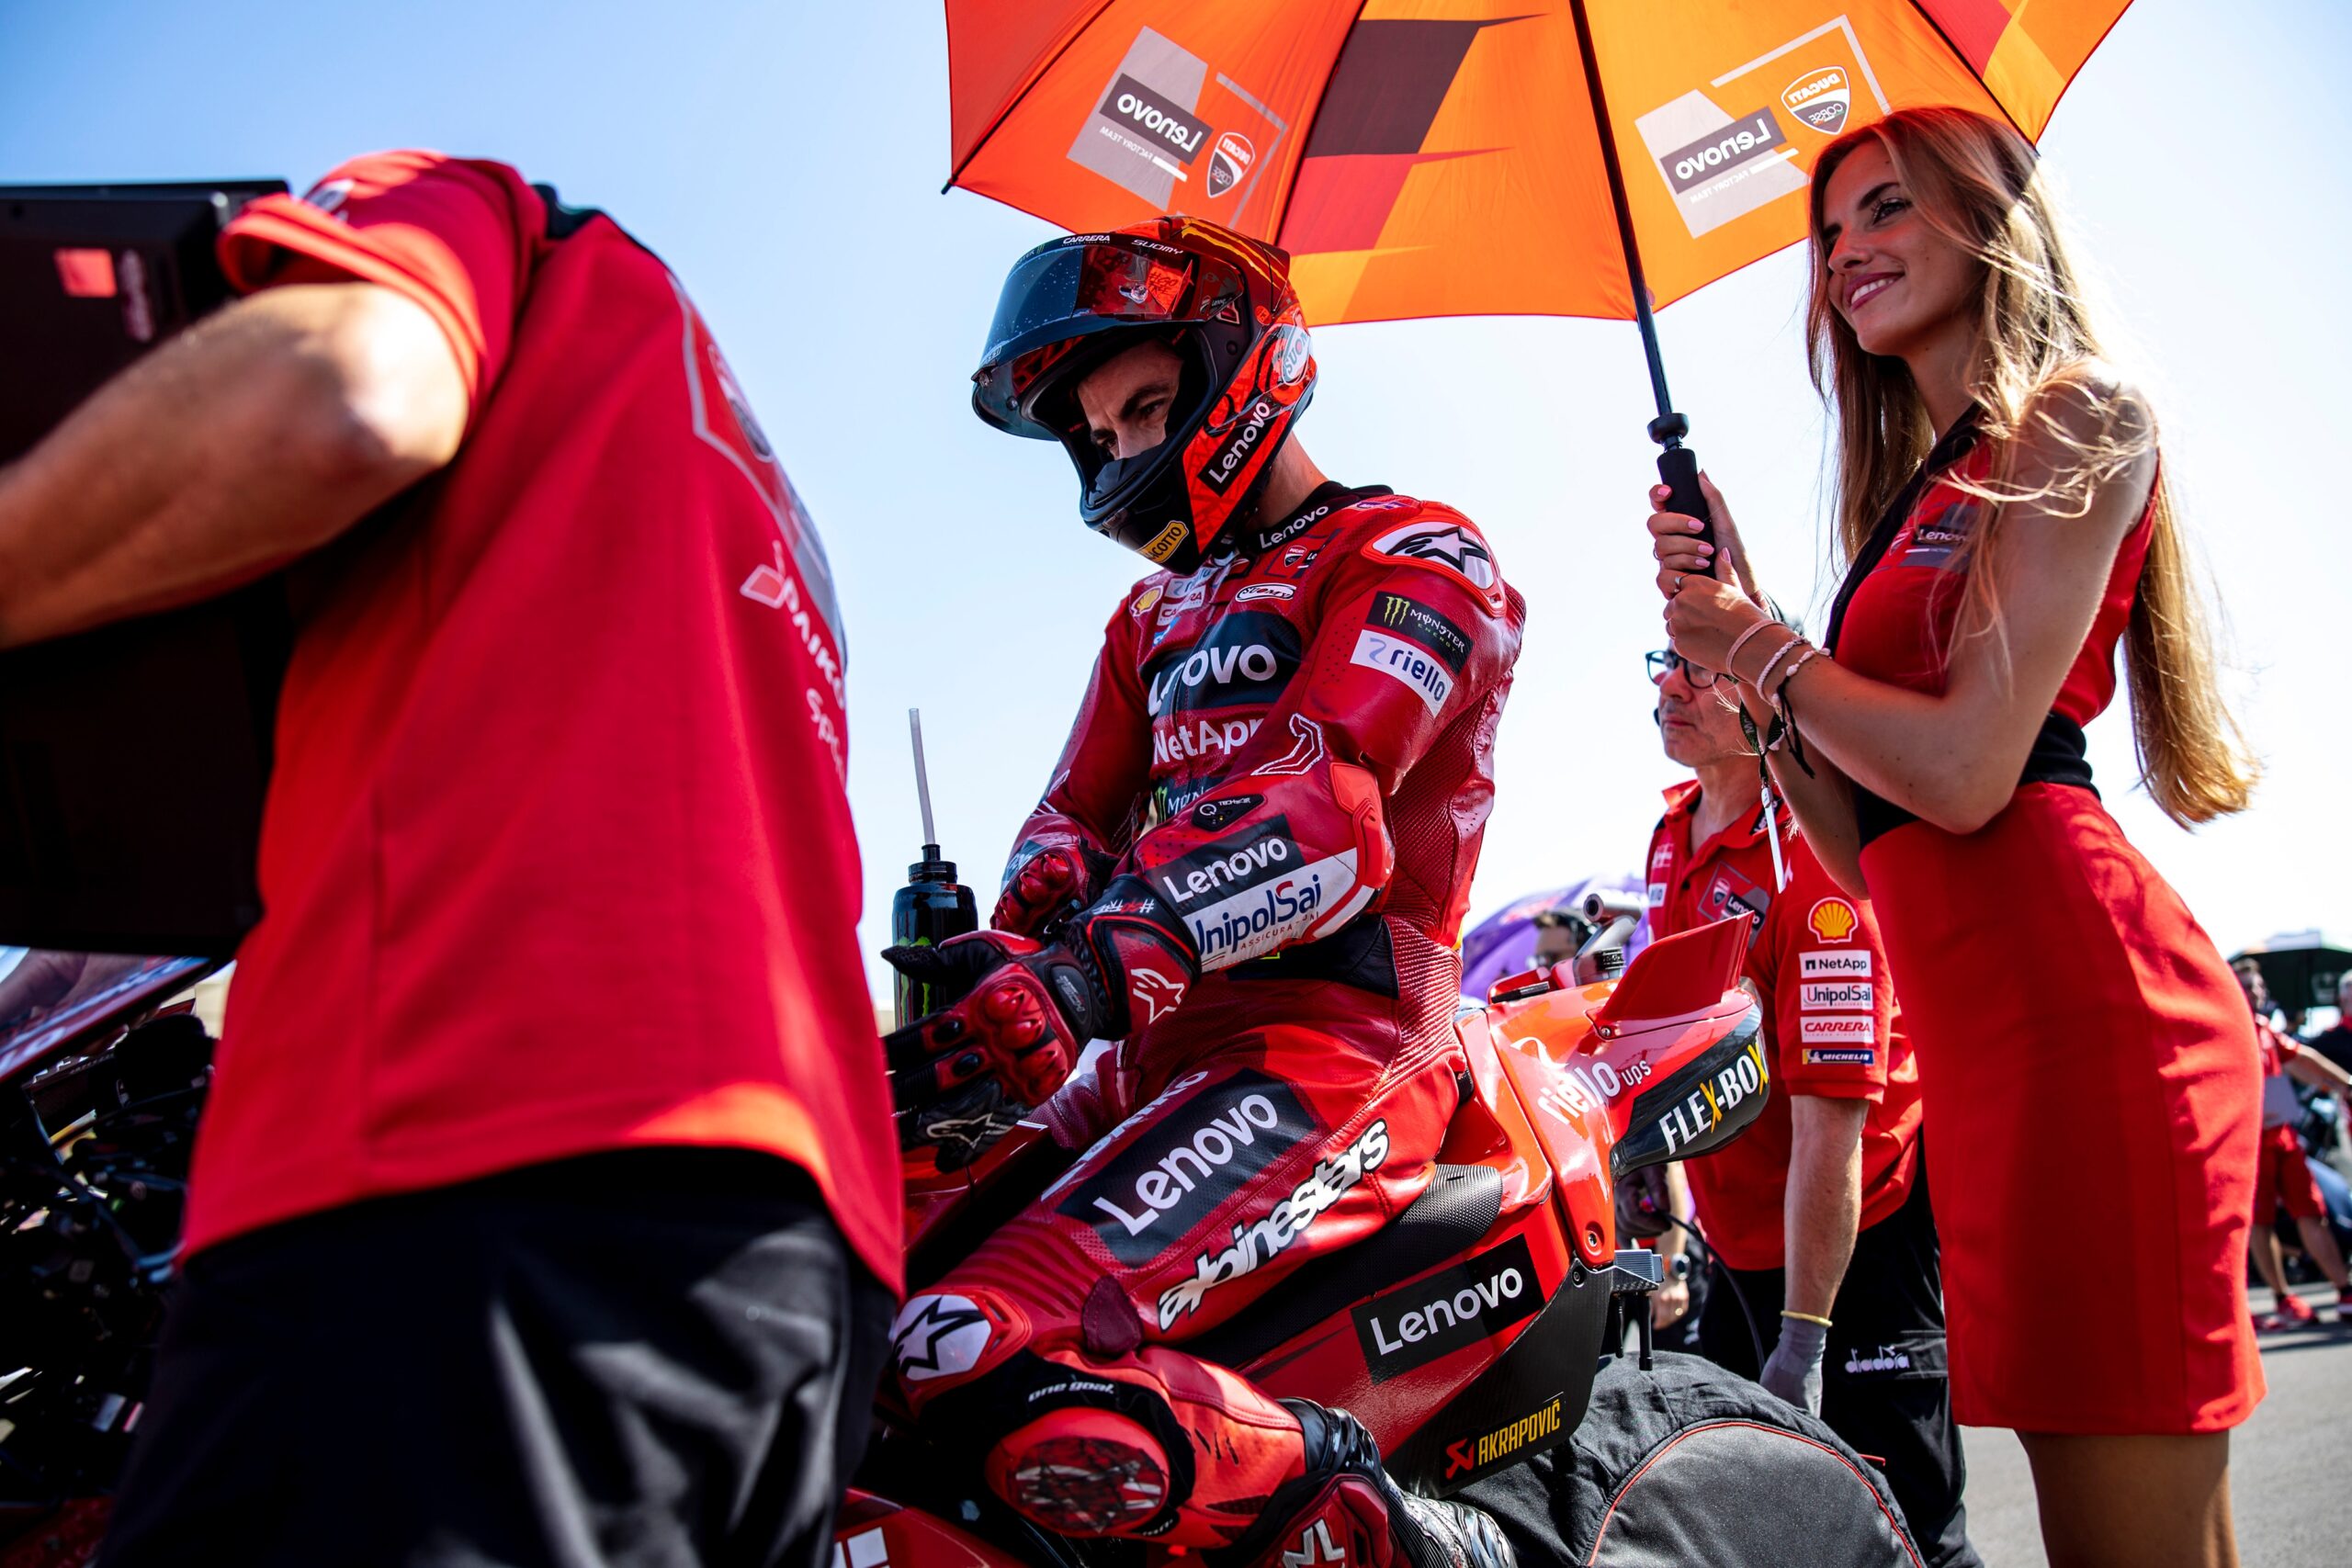 MotoGP, Indonésia, Corrida: Bagnaia regressa às vitórias e passa a líder no  'KO' de Martin - MotoSport